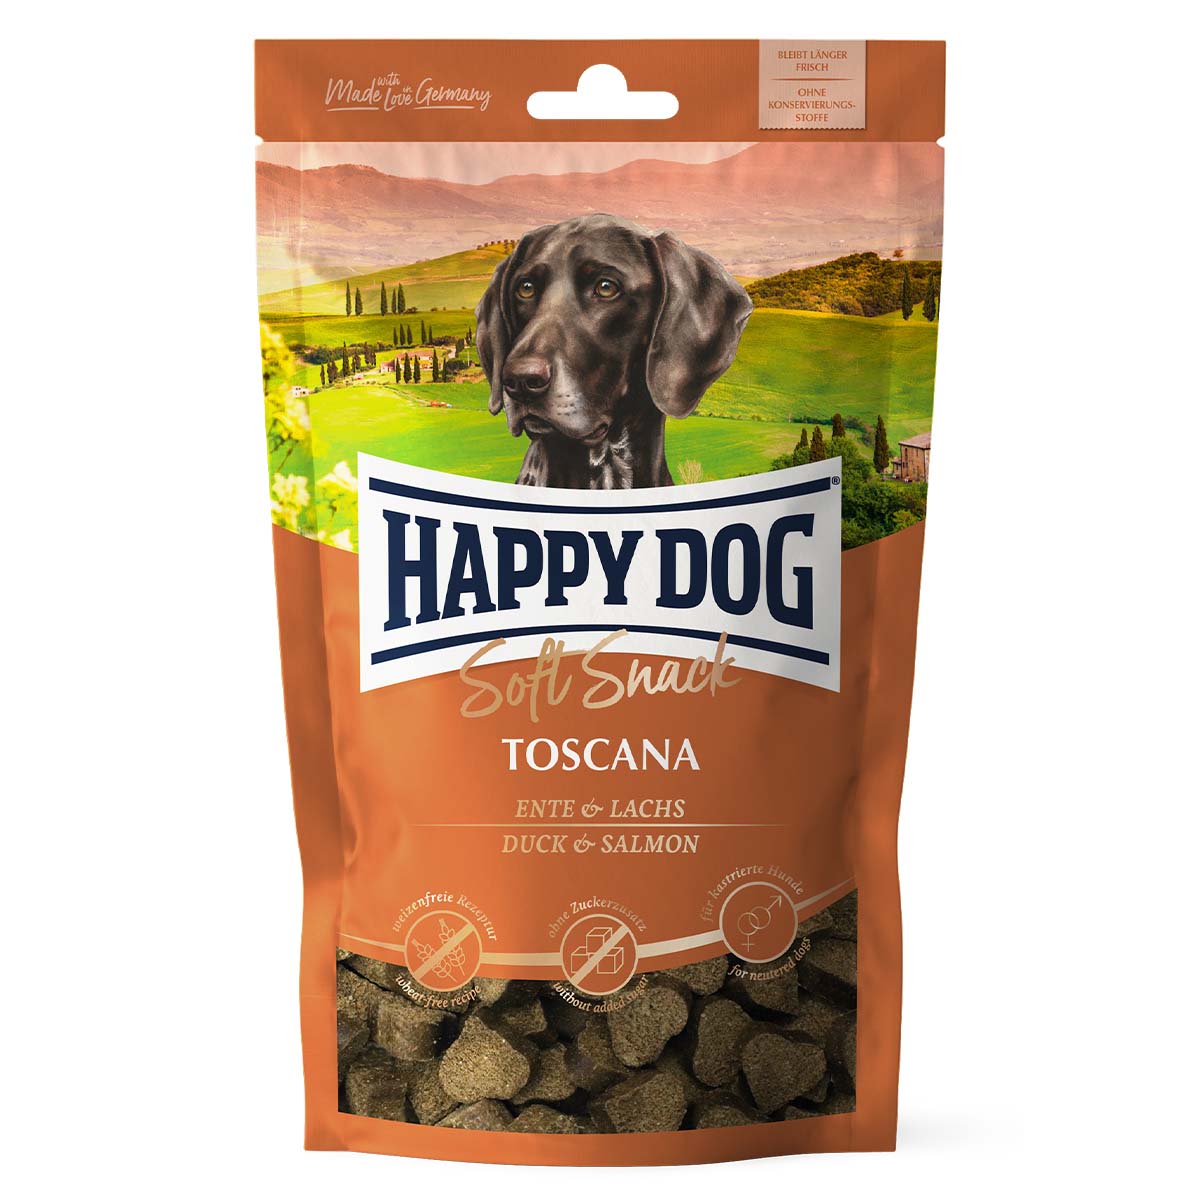 happy dog soft snacks toscana 1